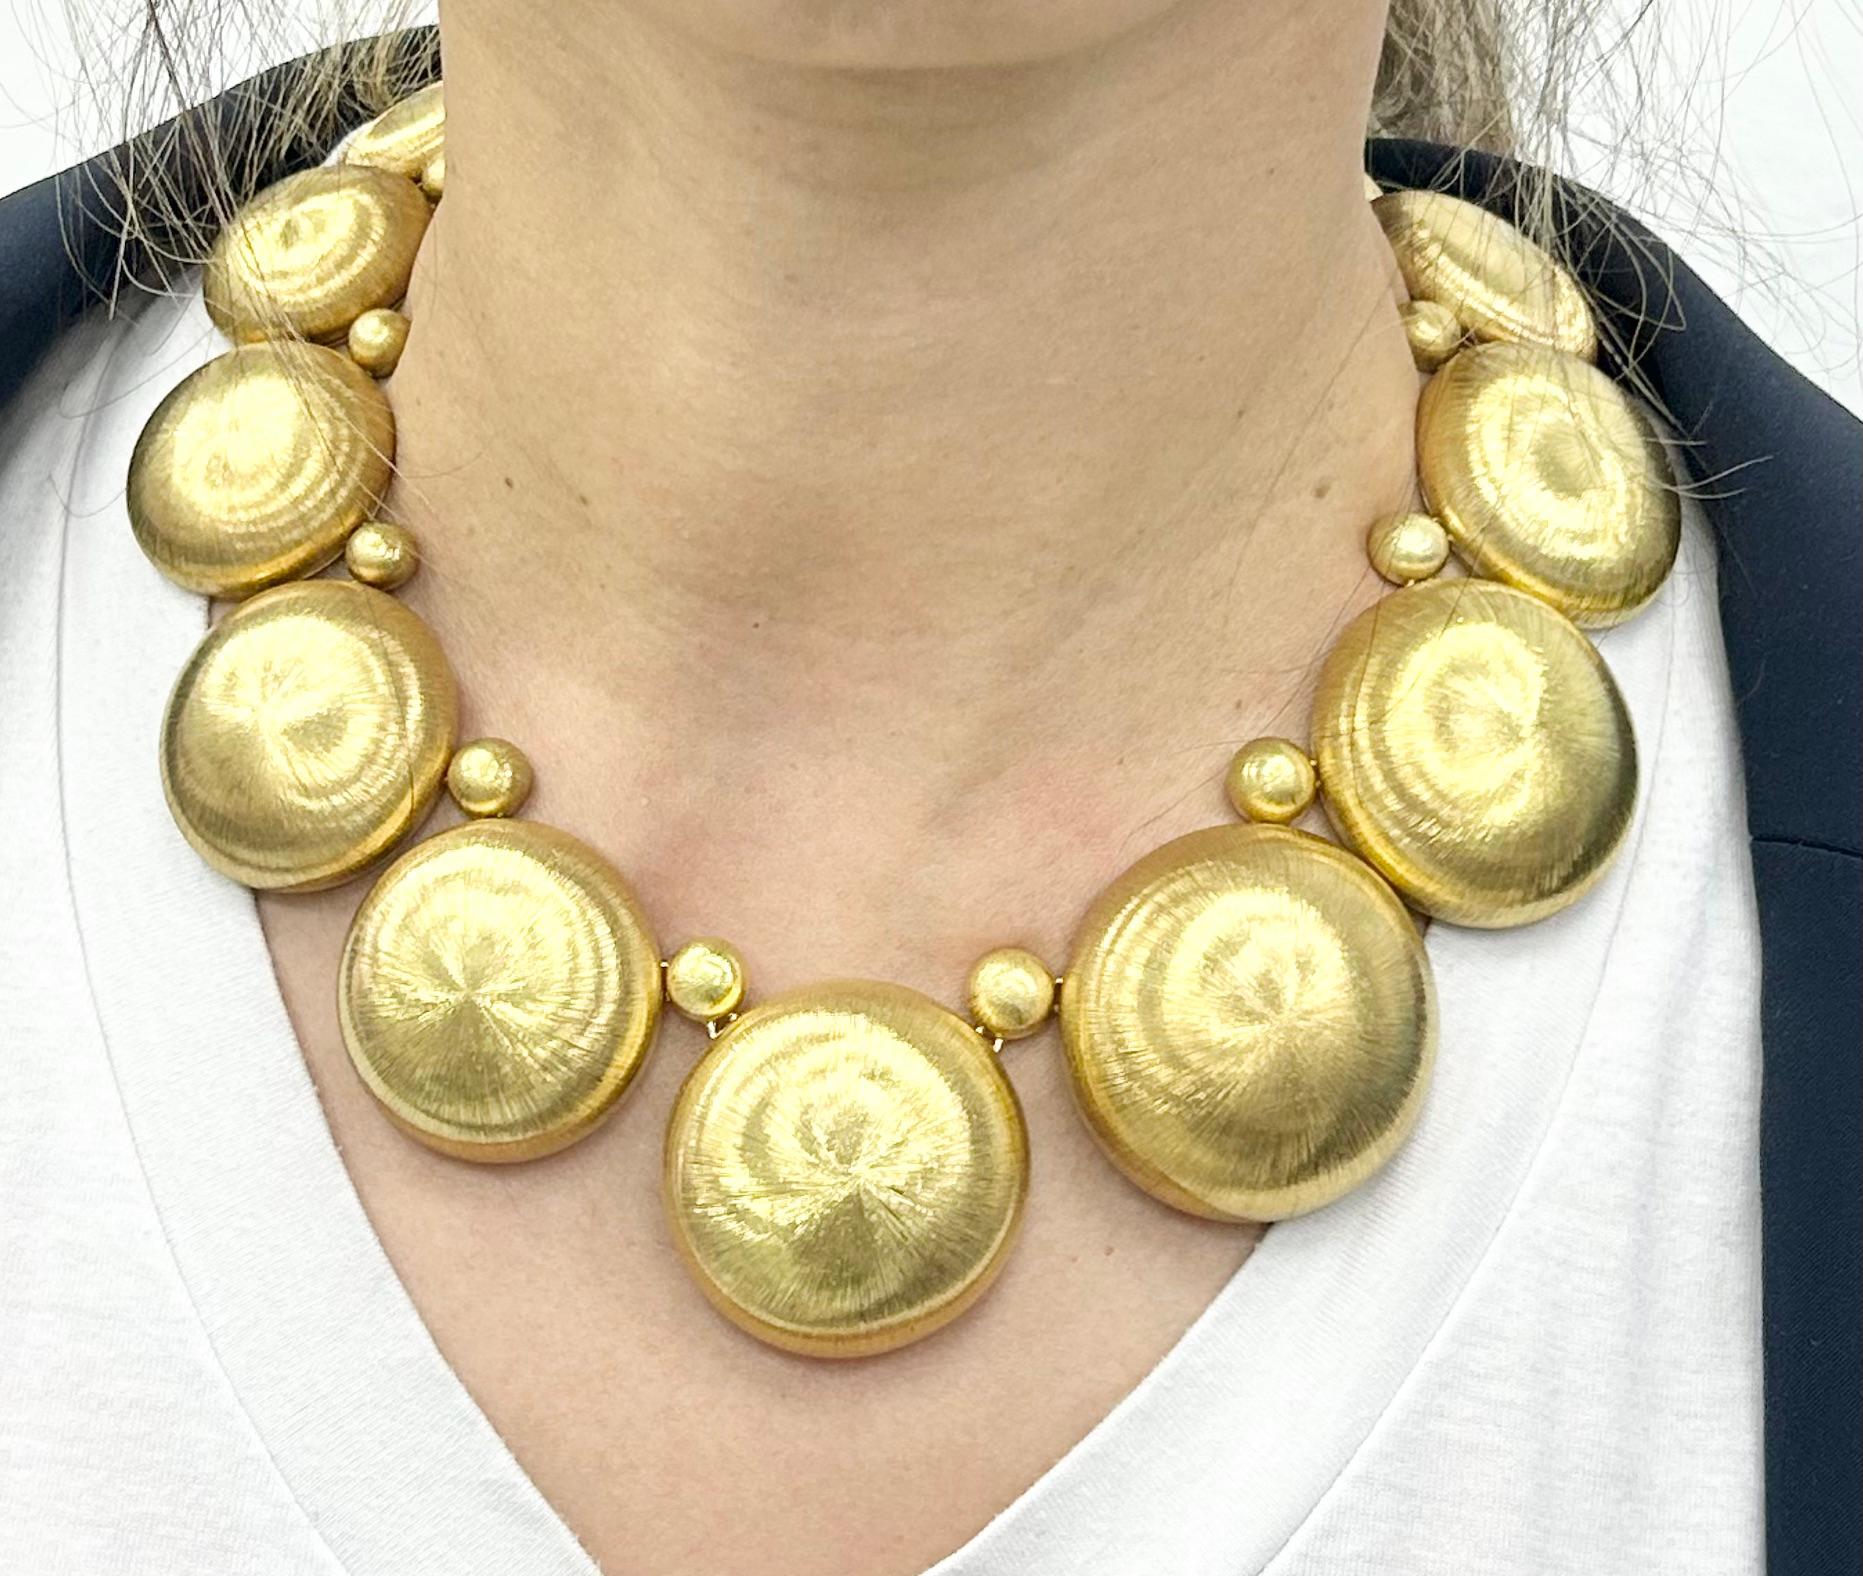 Sehr wichtige kreisförmige Kette aus 18k Gelbgold Mario Buccellati Halskette, markiert *15 M und gestempelt M. Buccellati
Kreisglieder ca. 23,6 bis 38,3 mm